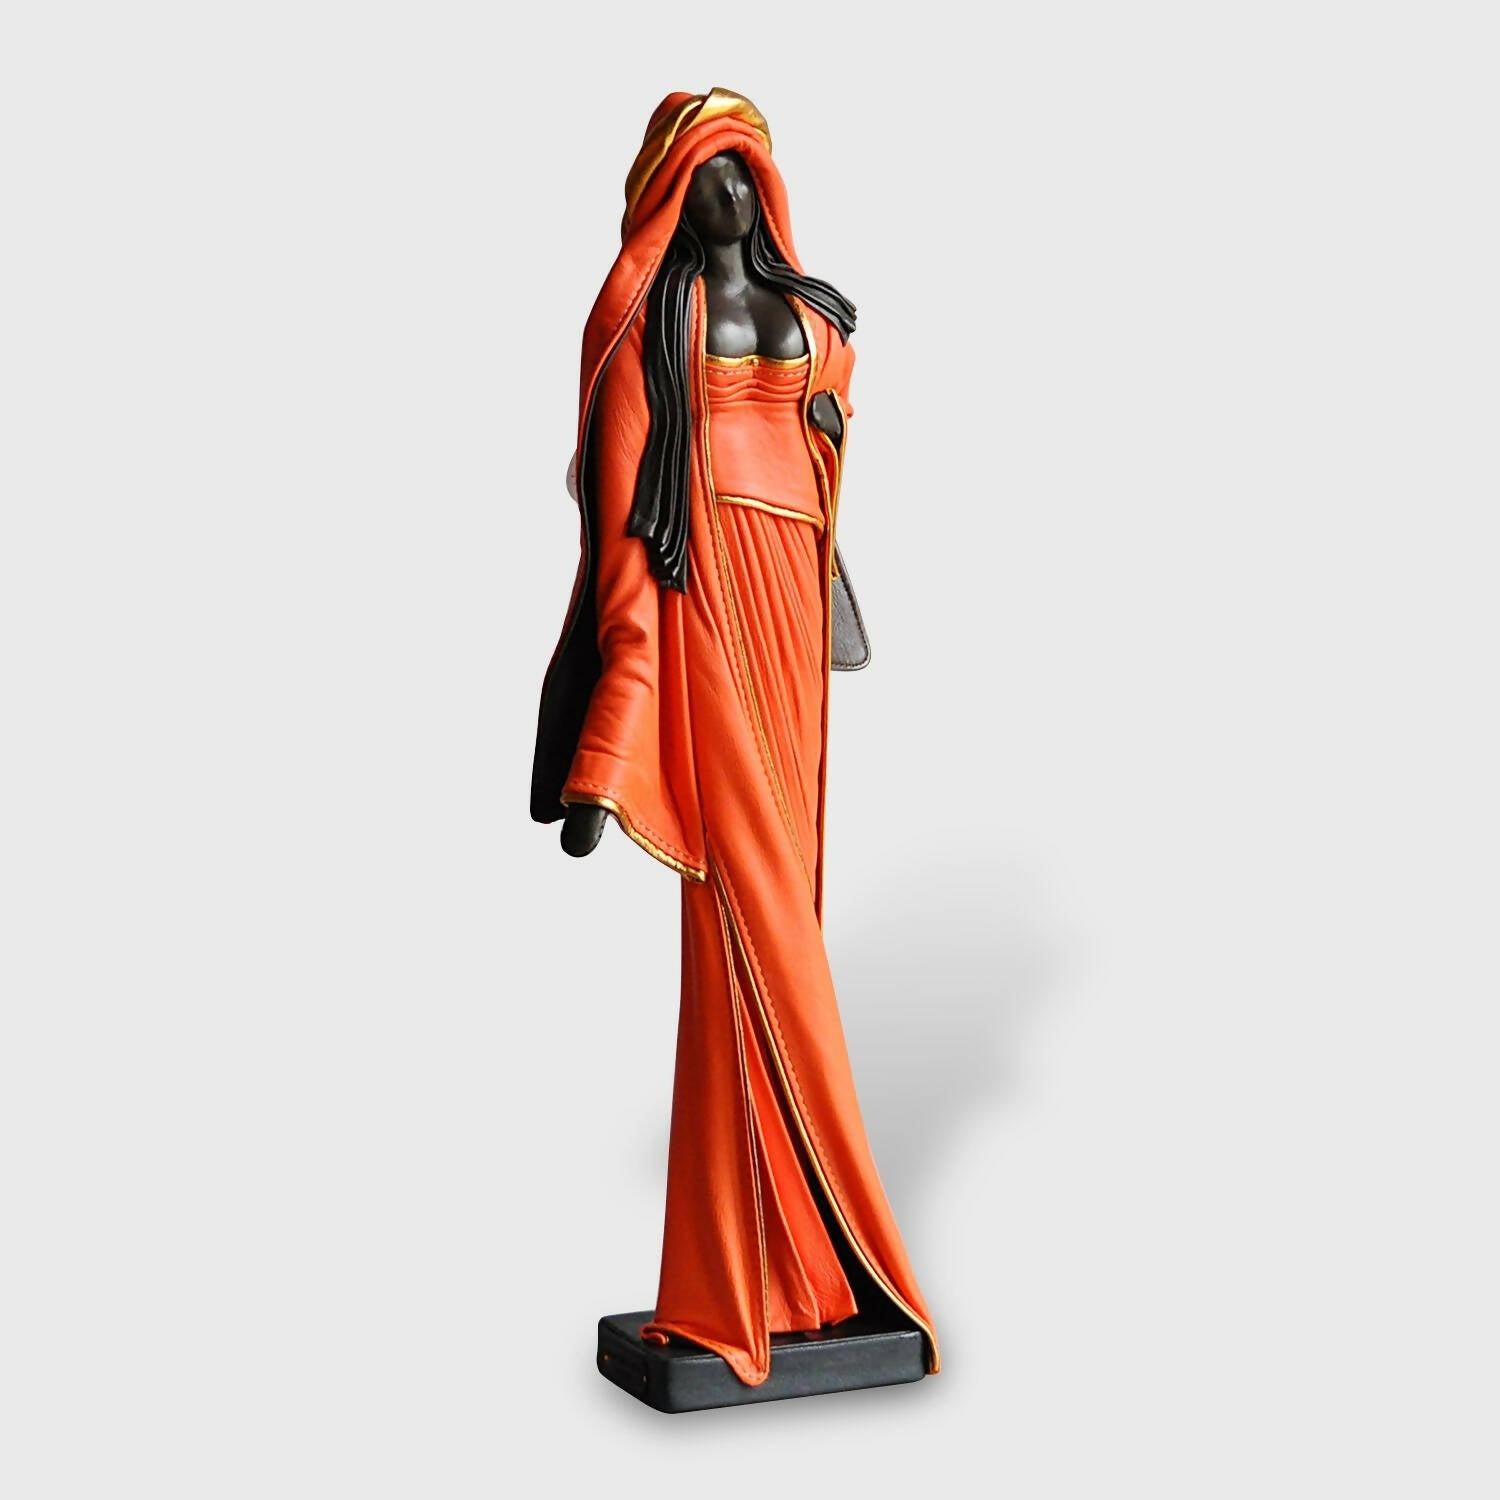 Sculpture Femme orange debout | EMPREINTES Paris | EMPREINTES Paris